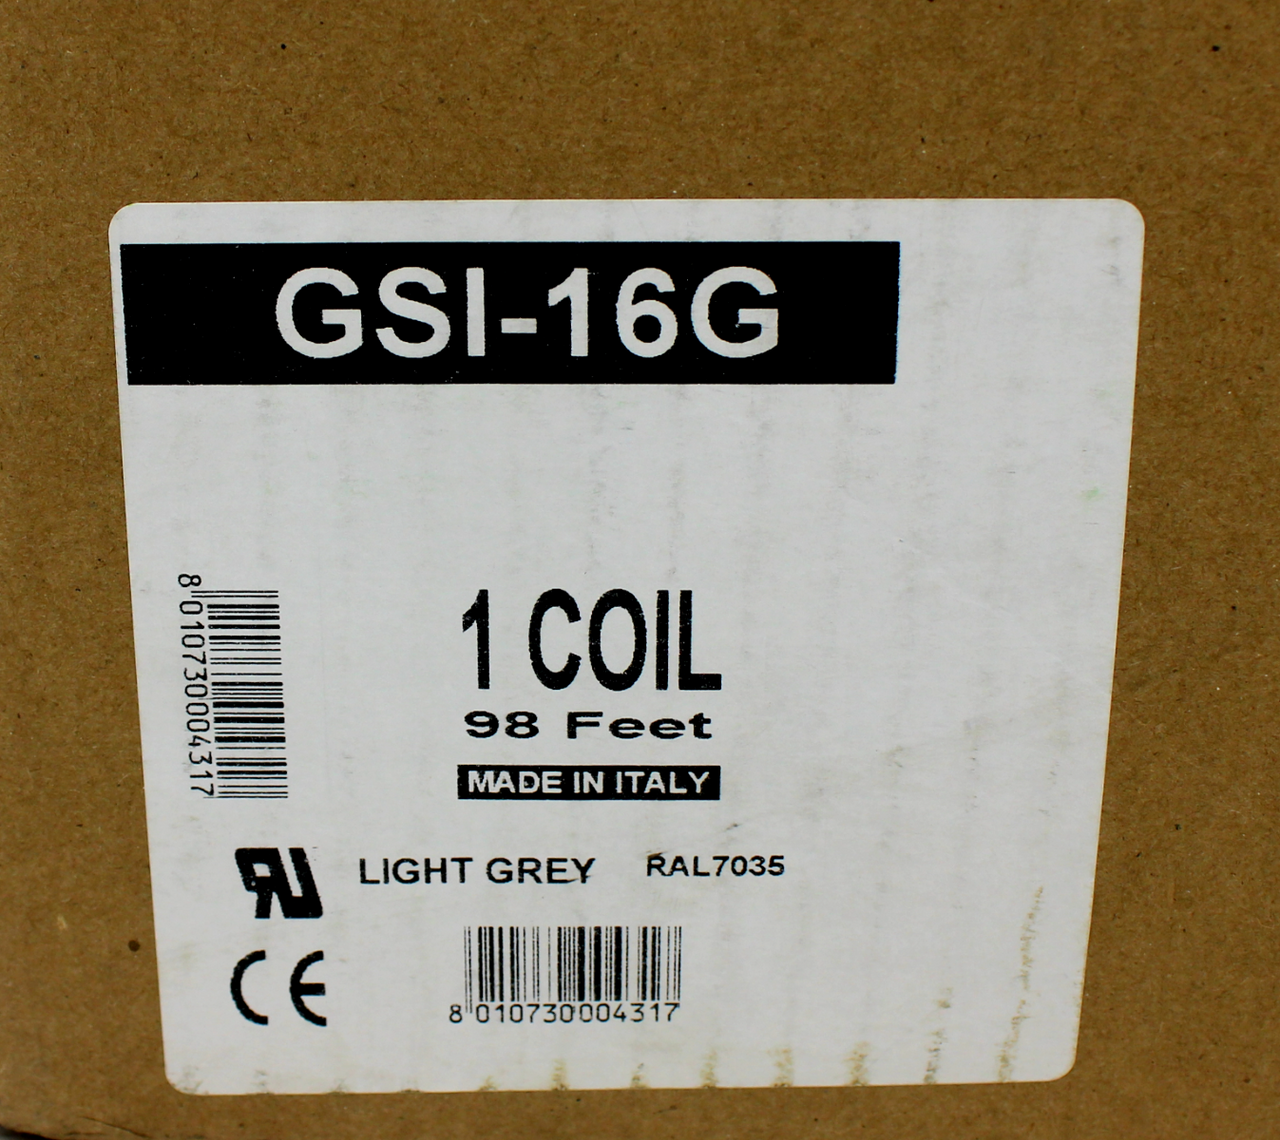 GSI-16G Light Gray Coil Tubing, 98FT, NEW